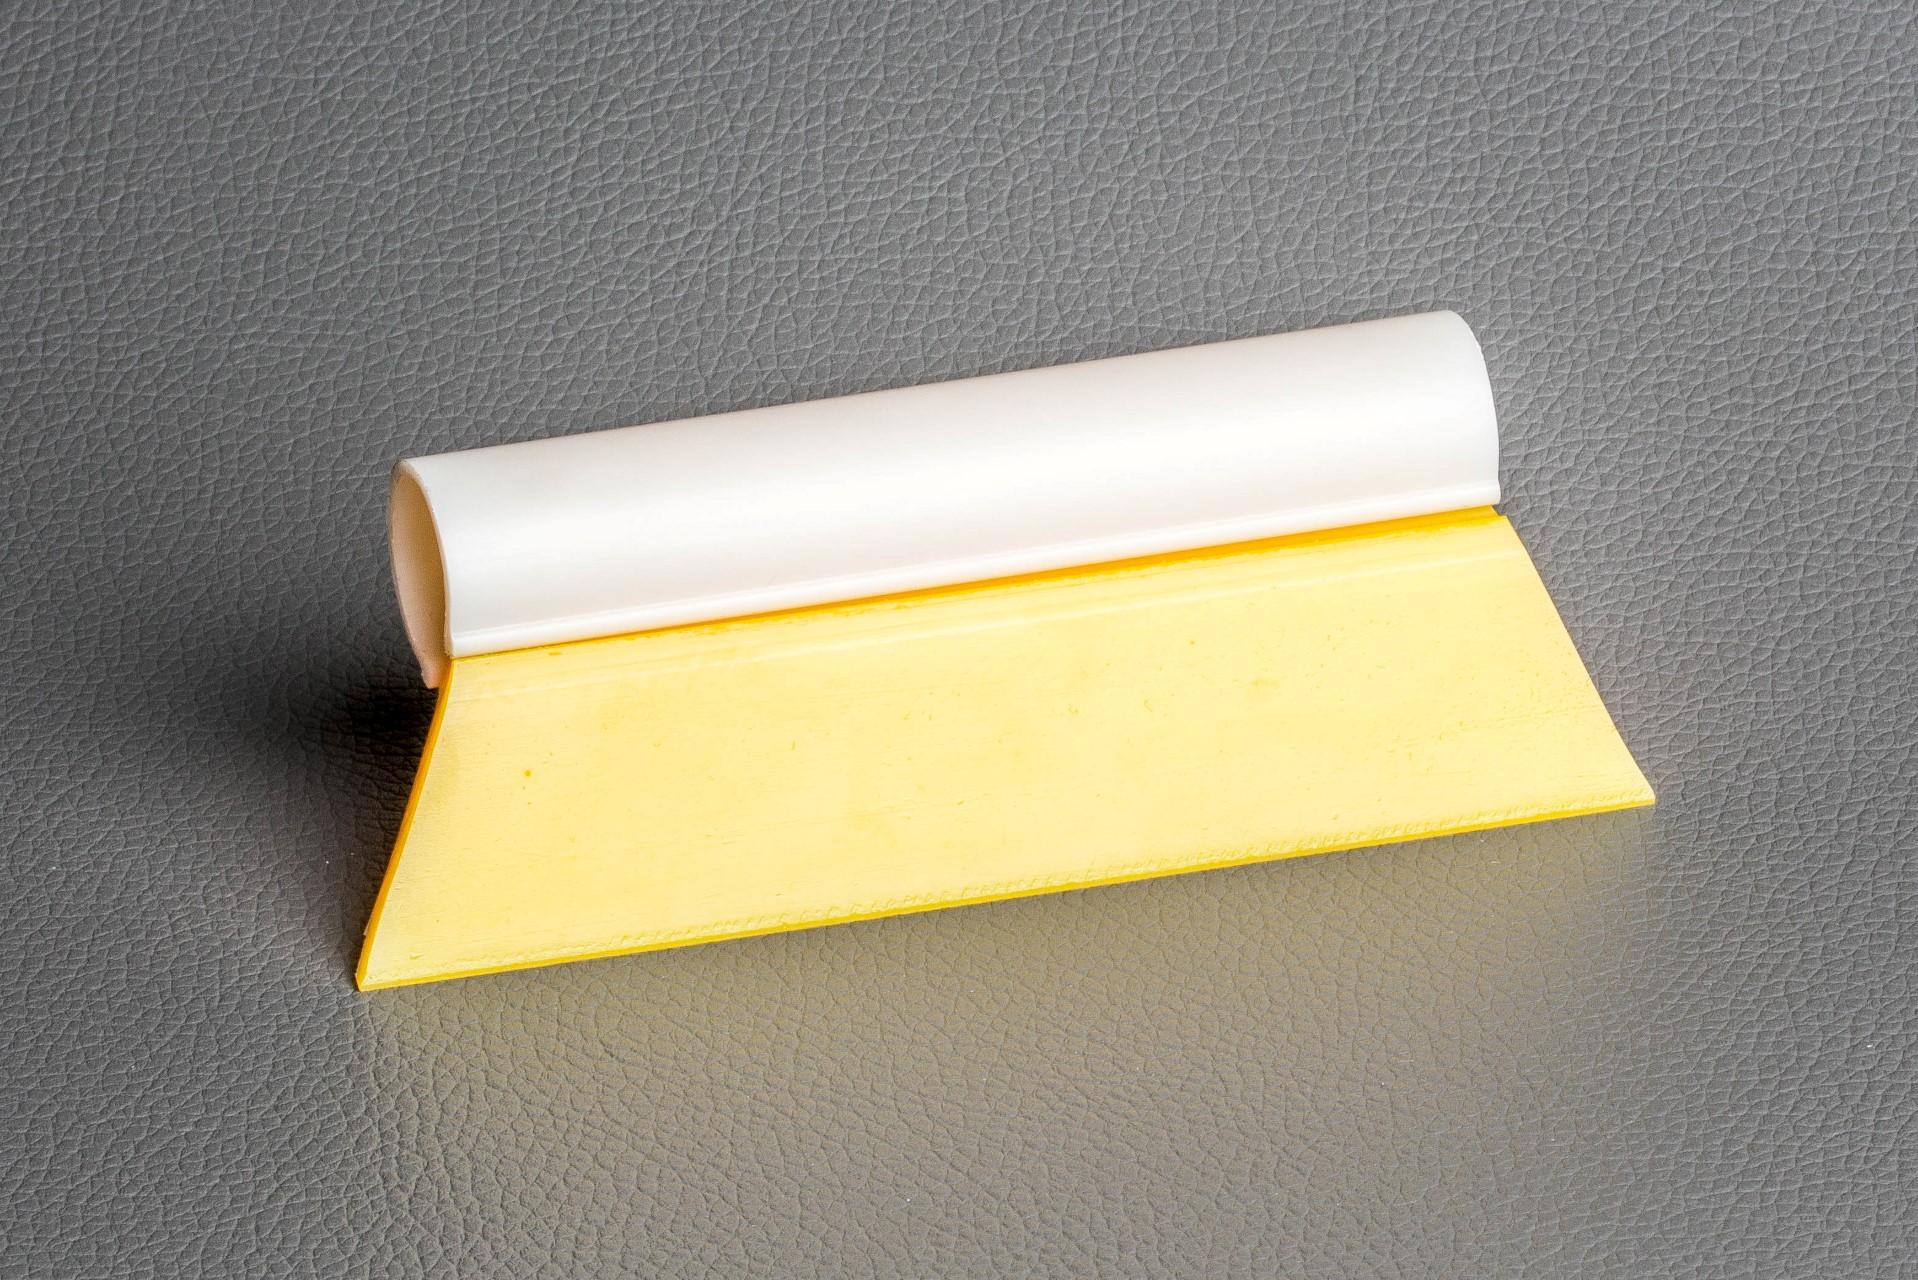 Foto: Quetscher gelb -  Kantenlänge 9 cm